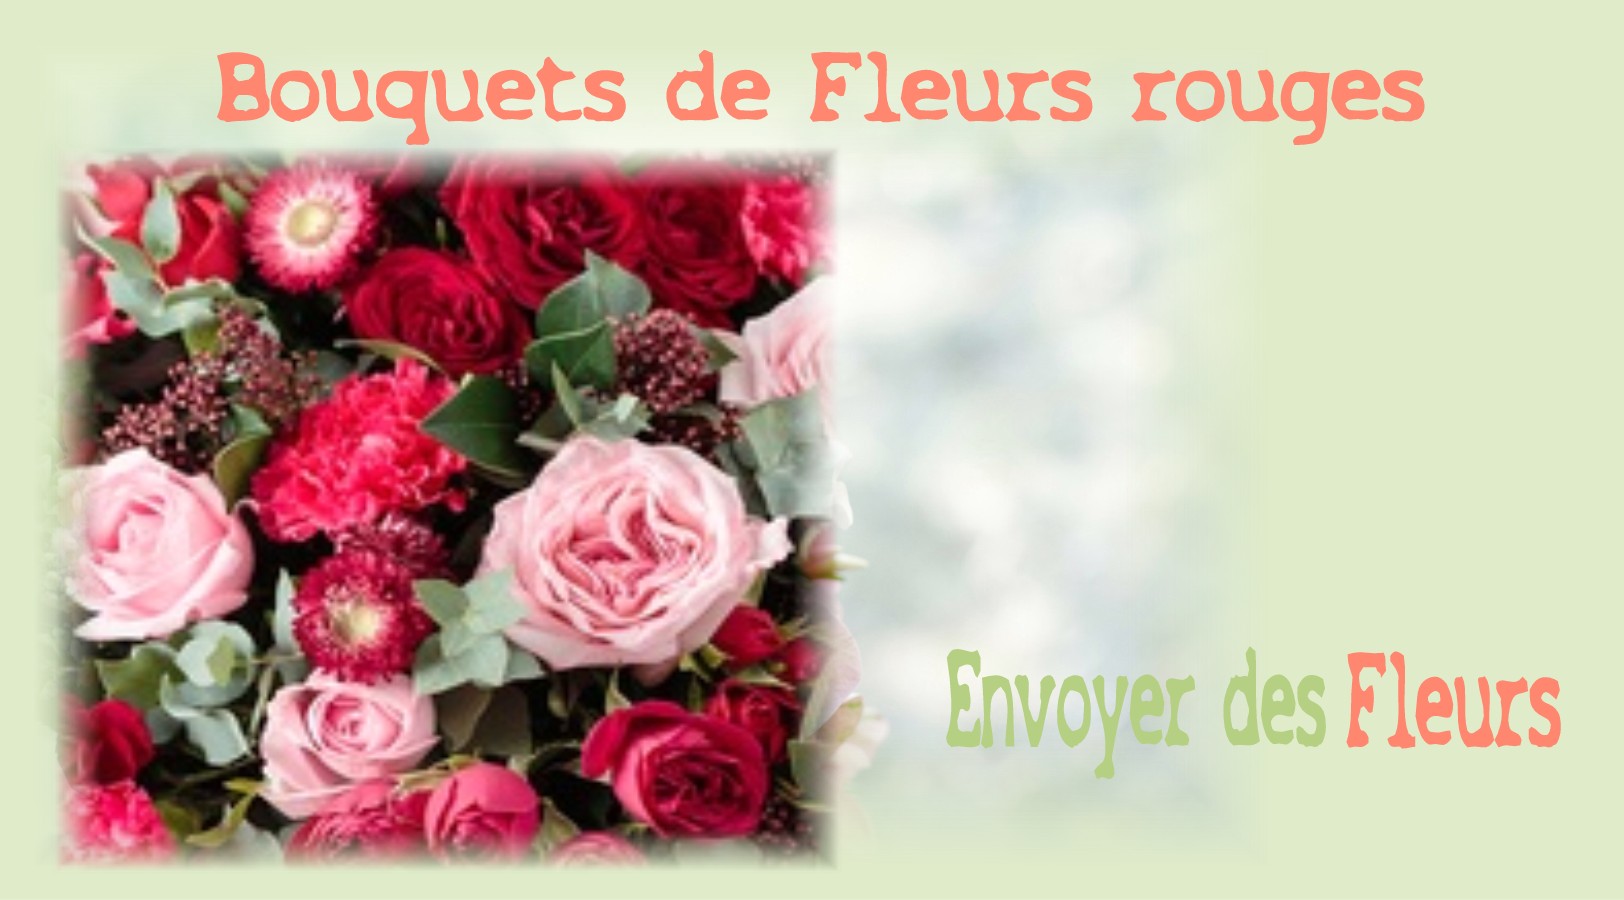 BOUQUETS DE FLEURS ROUGES - FLEURISTE LYON (69) - ENVOYER DES FLEURS